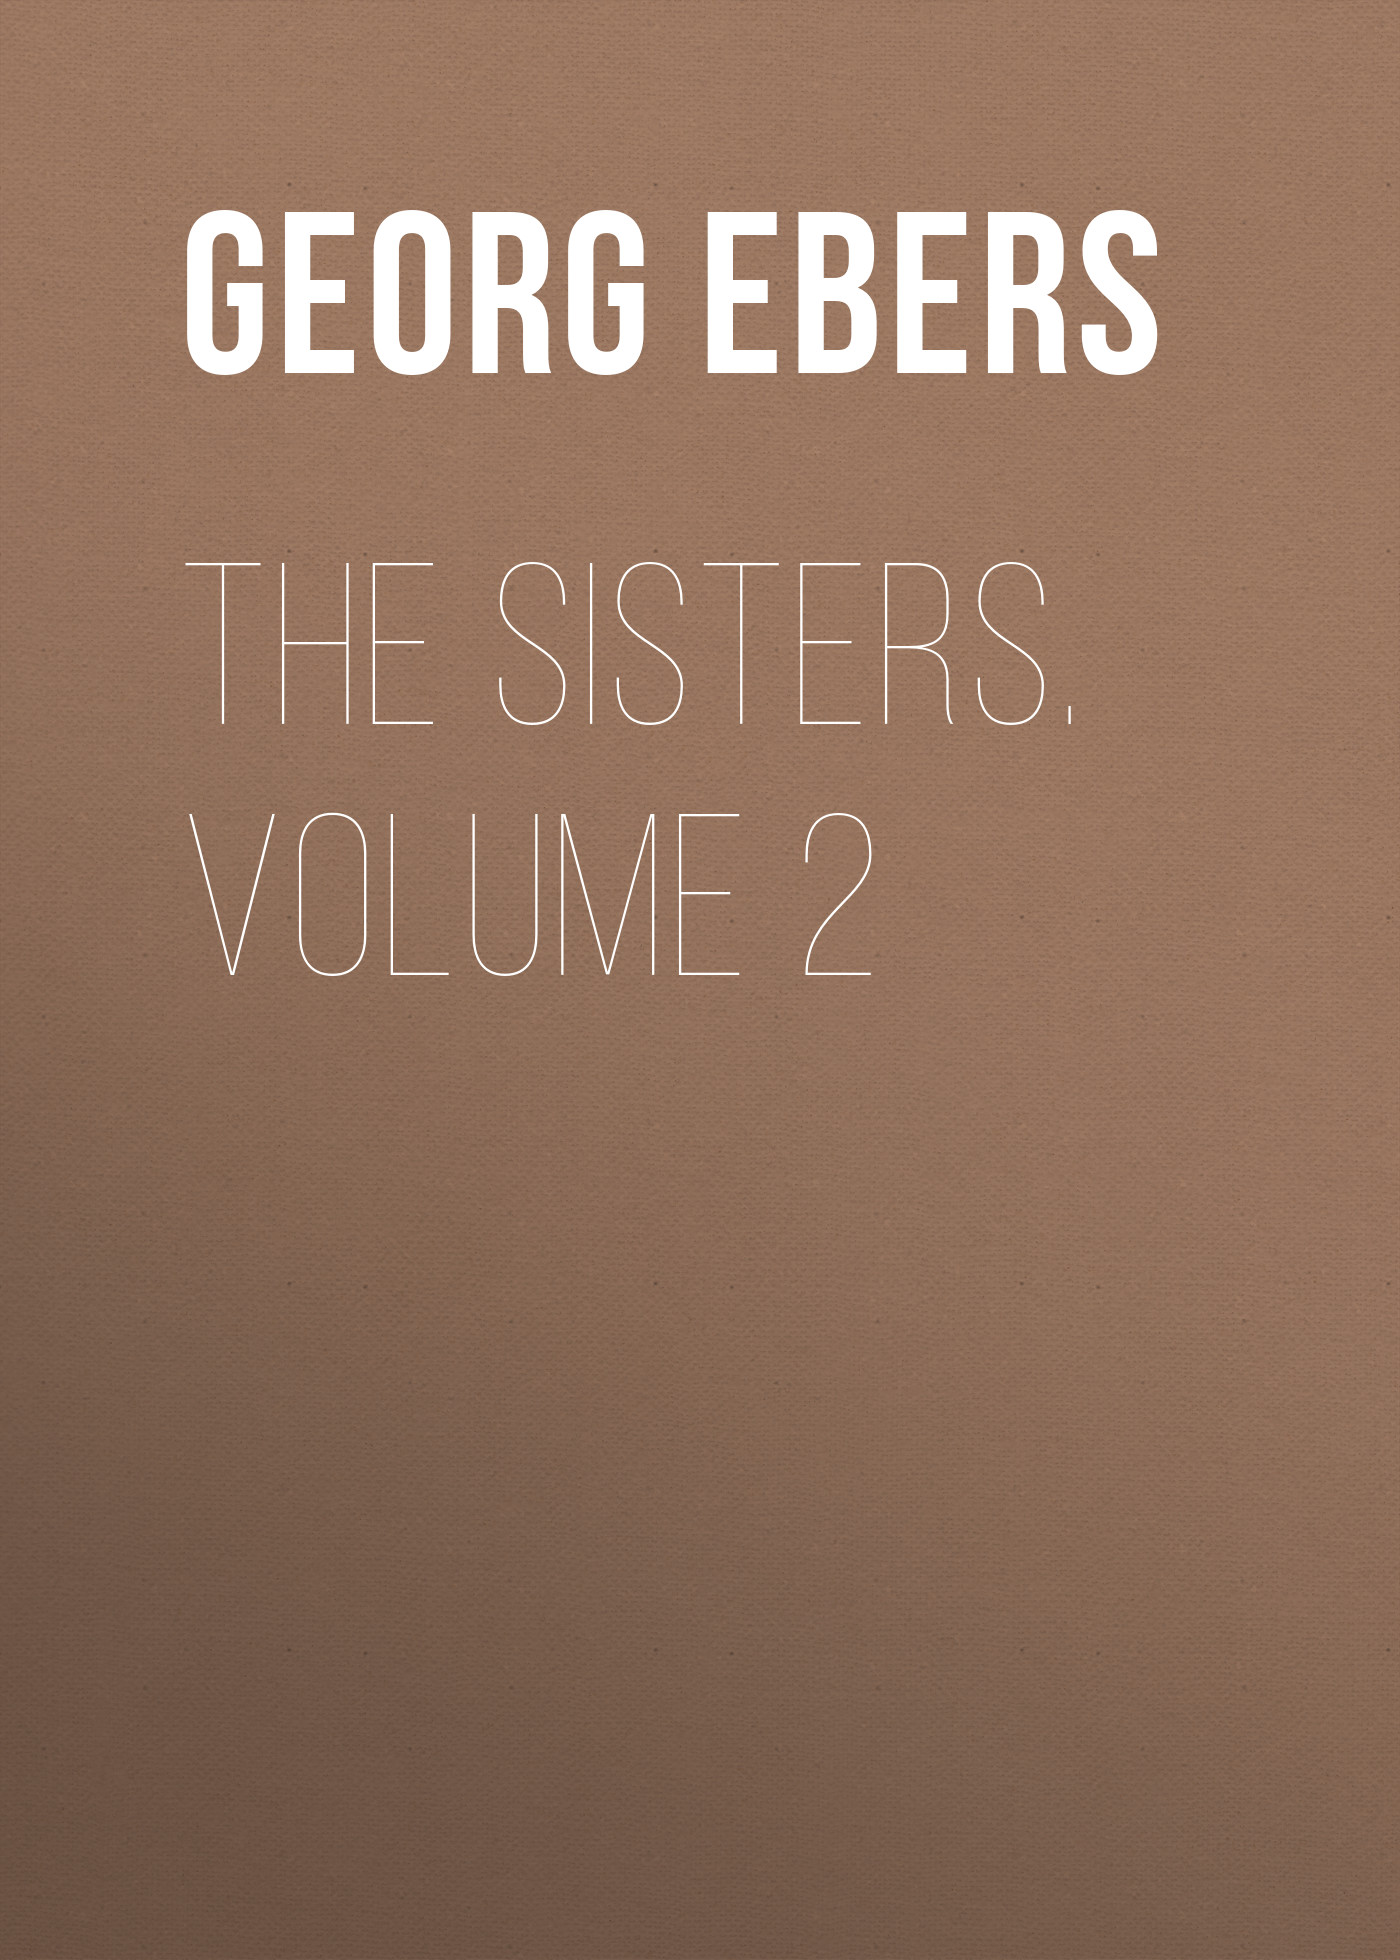 Книга The Sisters. Volume 2 из серии , созданная Georg Ebers, может относится к жанру Зарубежная классика, Литература 19 века, Зарубежная старинная литература. Стоимость электронной книги The Sisters. Volume 2 с идентификатором 42627339 составляет 0 руб.